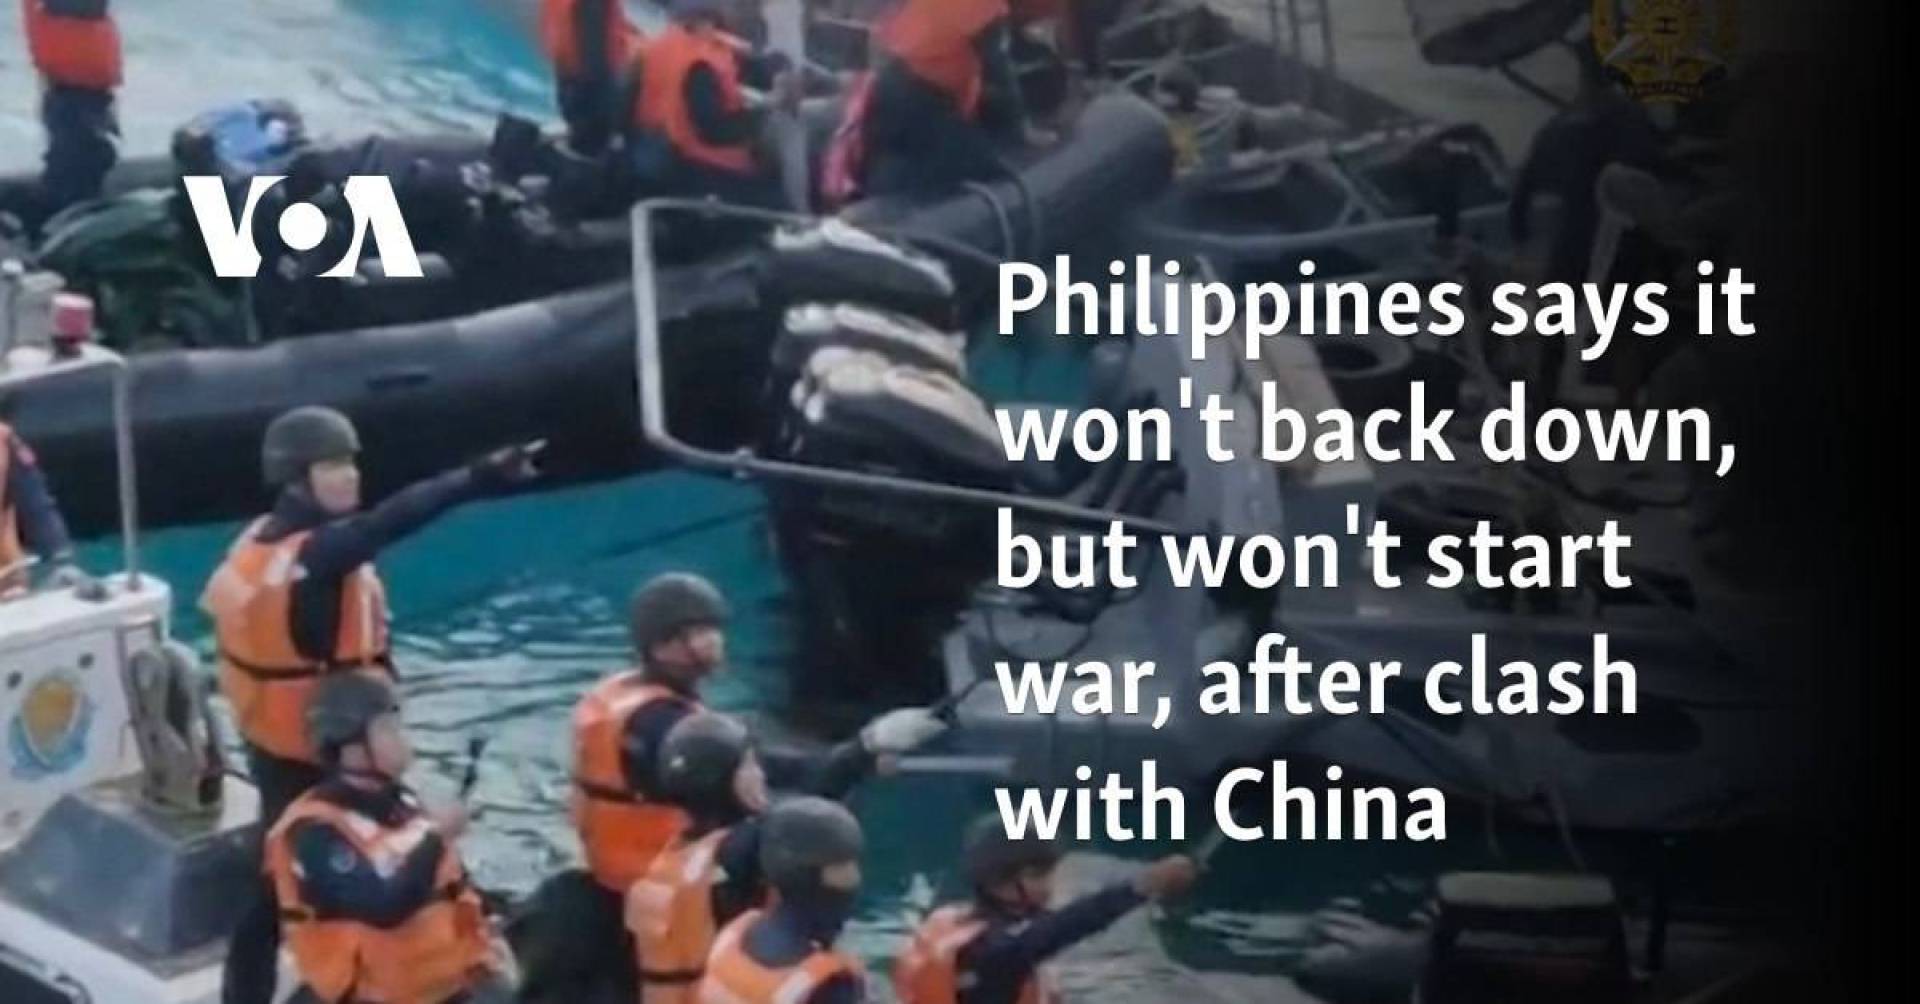 رئيس الفلبين يؤكد على أن الفلبين لن تشعل حرباً رغم الاعتداءات الصينية